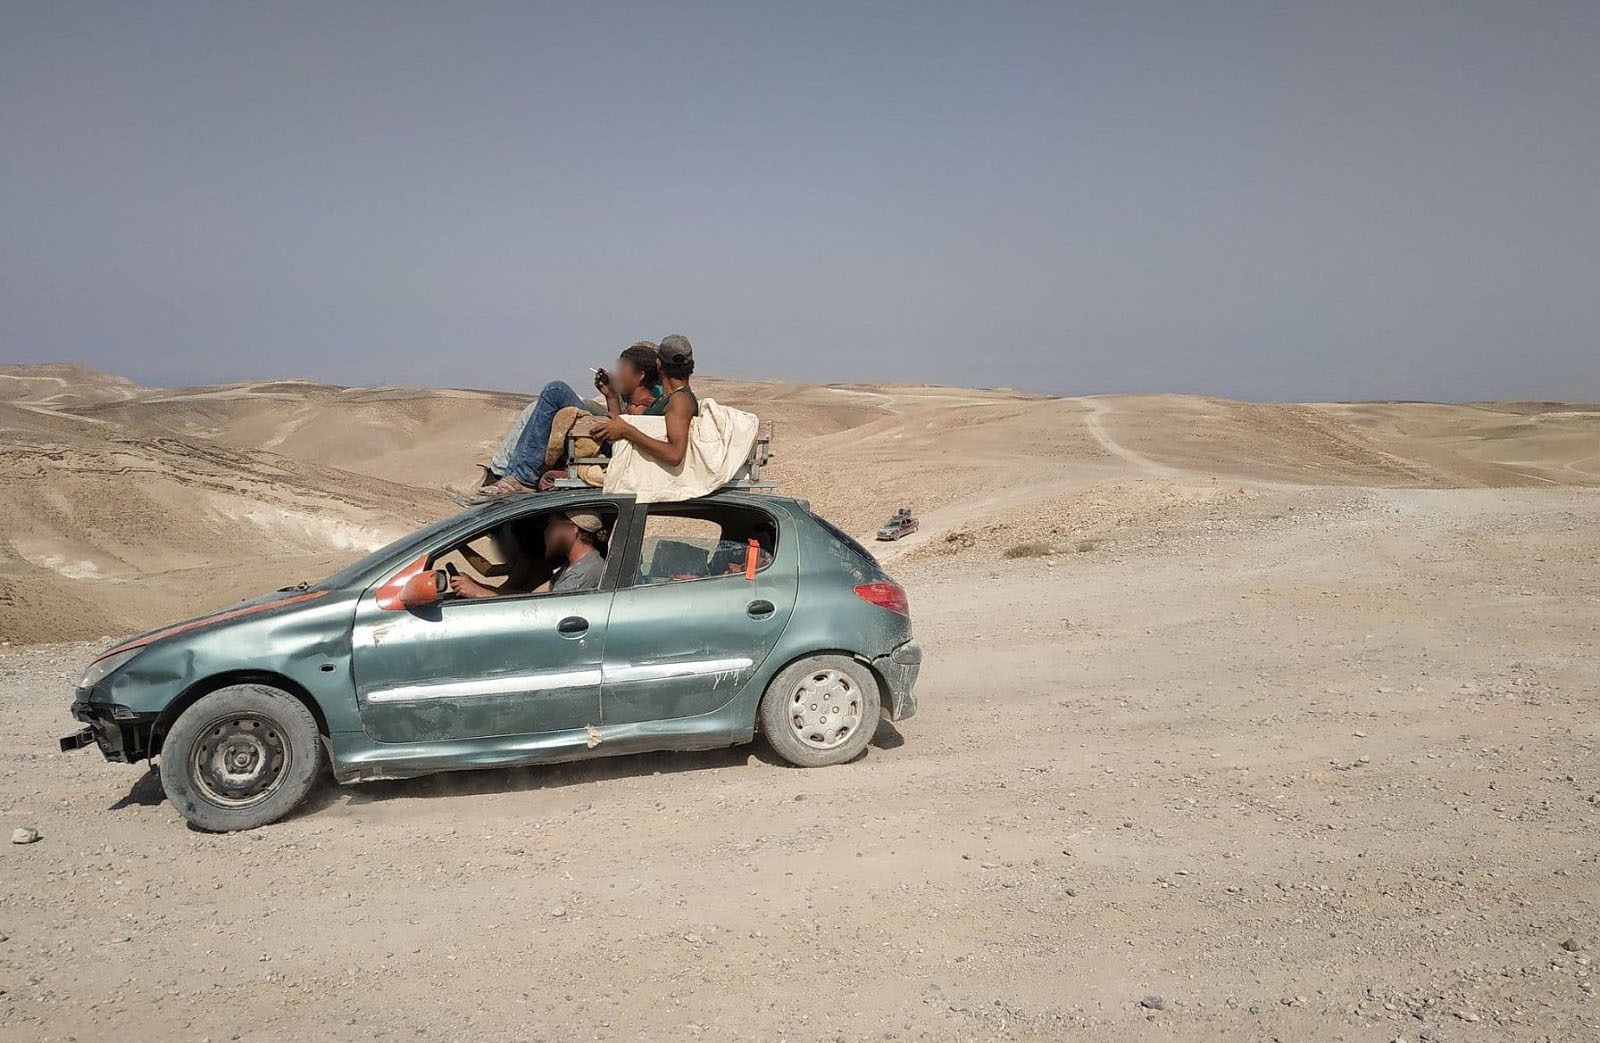 אי אפשר להבדיל בין נערי גבעות לחיילים. מתנחלים ליד בסיס פעילות של "ספר המדבר" ברוג'ום אל-נאקה (צילום: דרור אטקס)